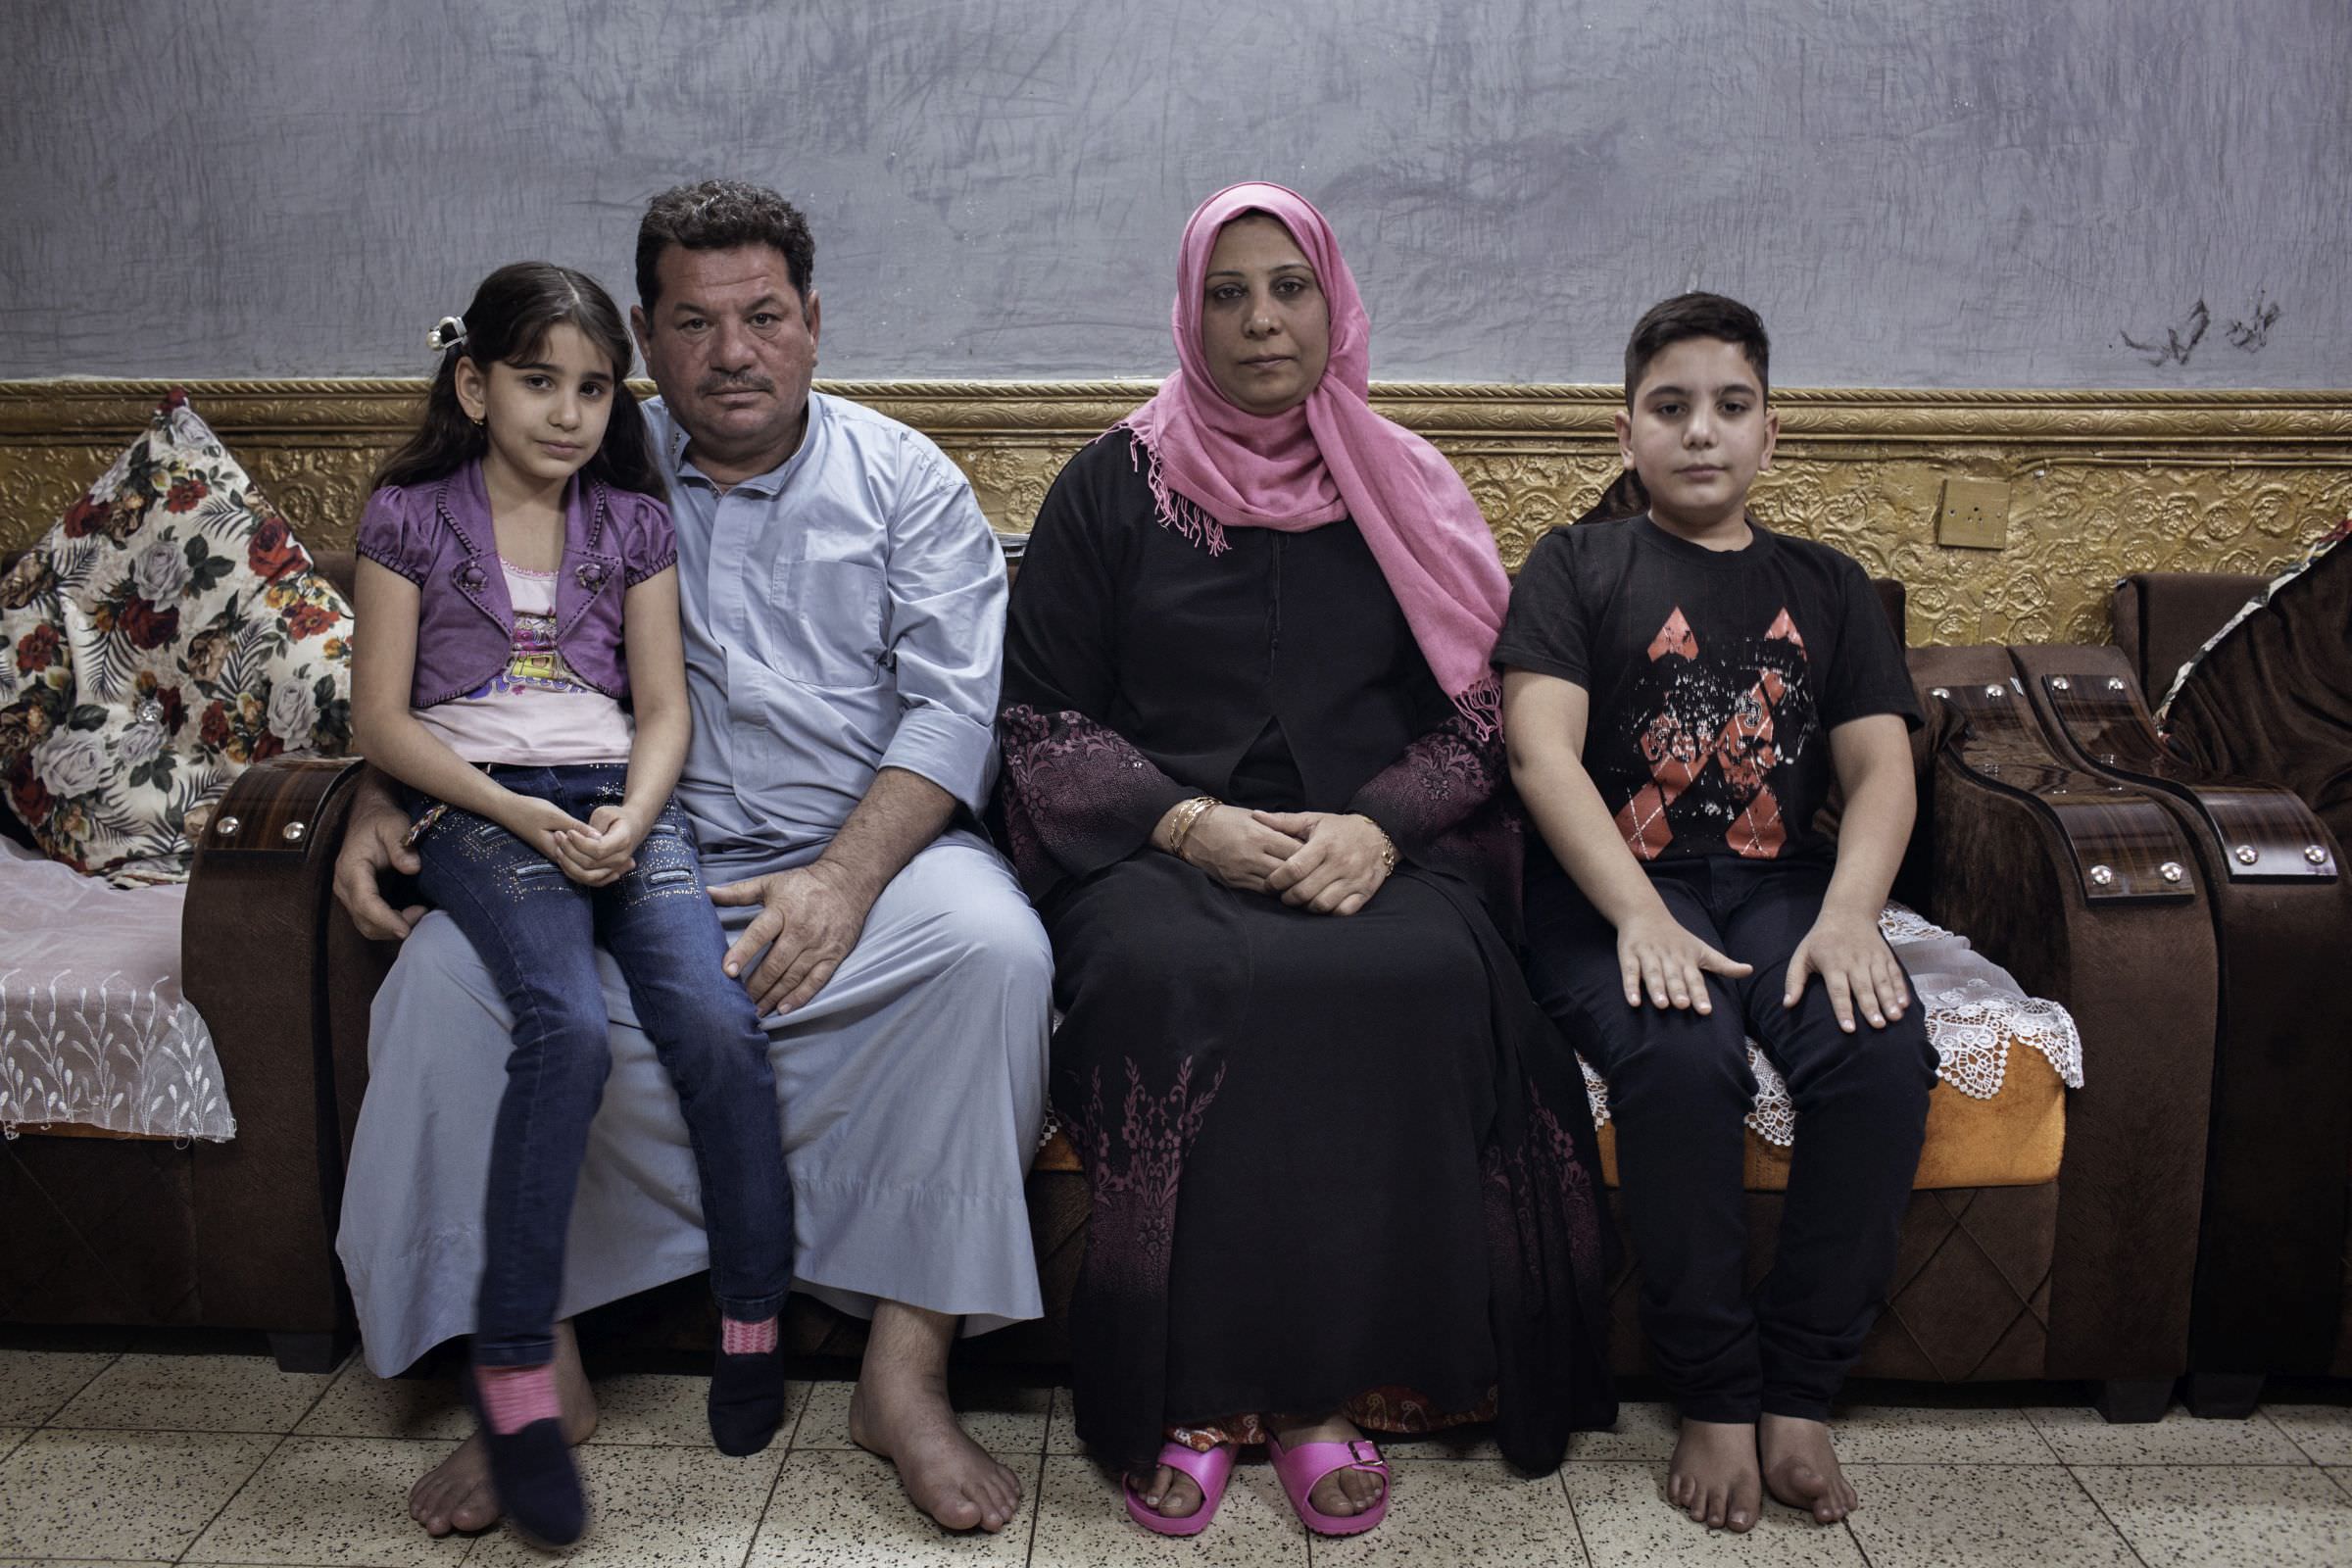 Ein kurzer Traum, Text & Fotos: Daniel Etter, „Süddeutsche Zeitung Magazin“ 49/2016, Der Iraker Laith Majid Al-Amiri und seine Familie überlebten im Sommer 2015 knapp die Flucht über das Mittelmeer. Der Fotograf von damals hat das Schicksal der Familie weiterverfolgt